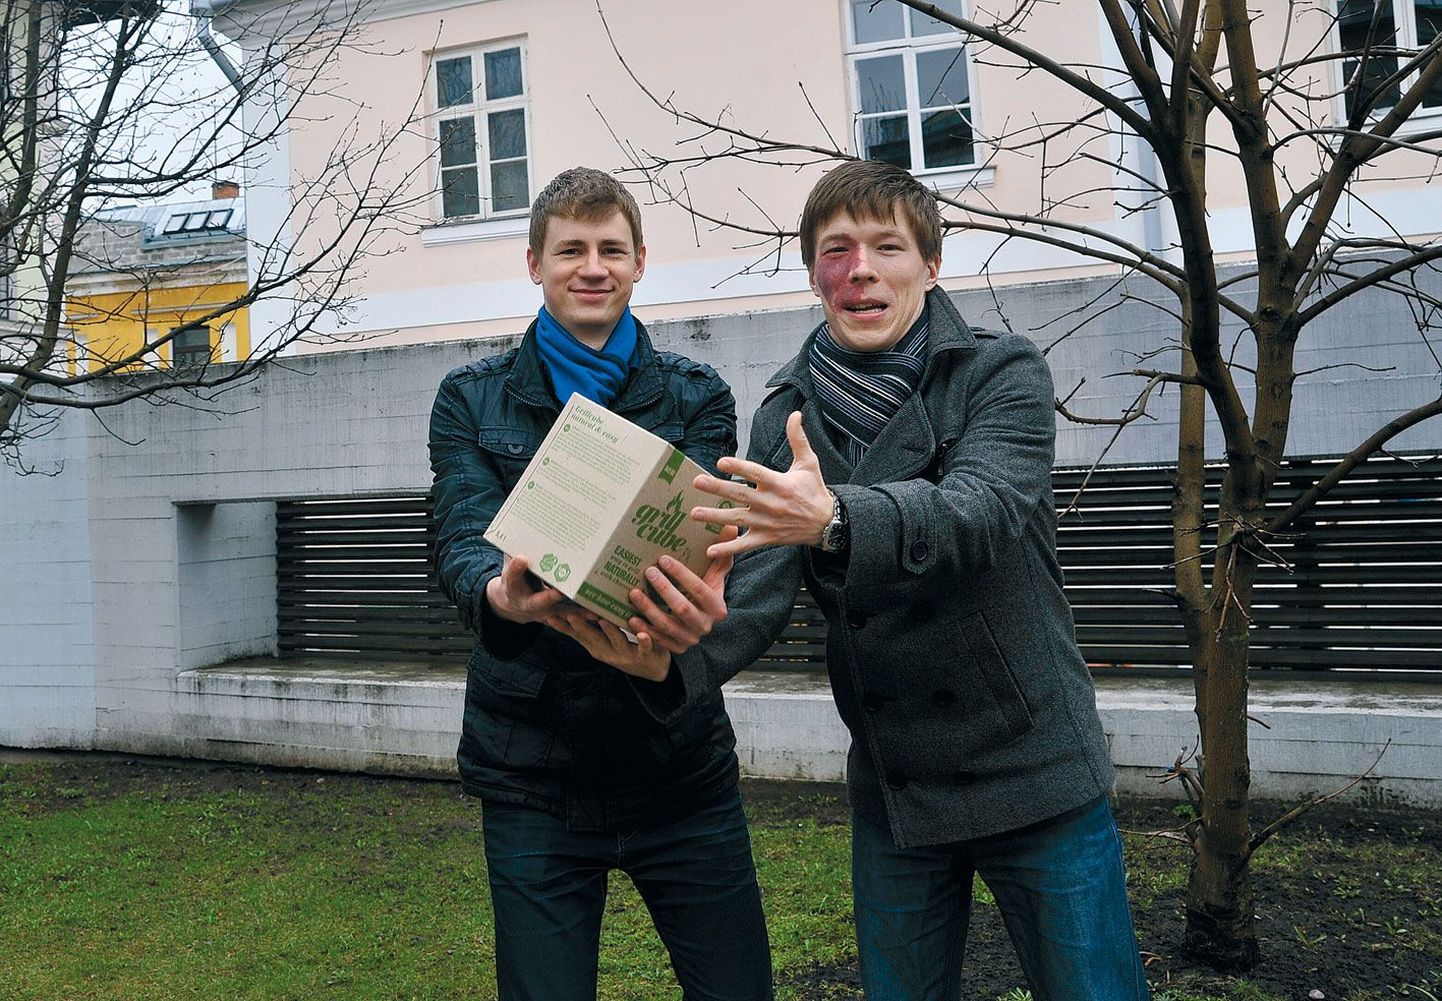 Ettevõtjad Mart Raus (vasakul) ja Vahur Mäe loodavad, et peale Eesti kogub nende grillimiskuubik tuntust ja kasutajaid kõikjal Euroopas ning Põhja-Ameerikaski.